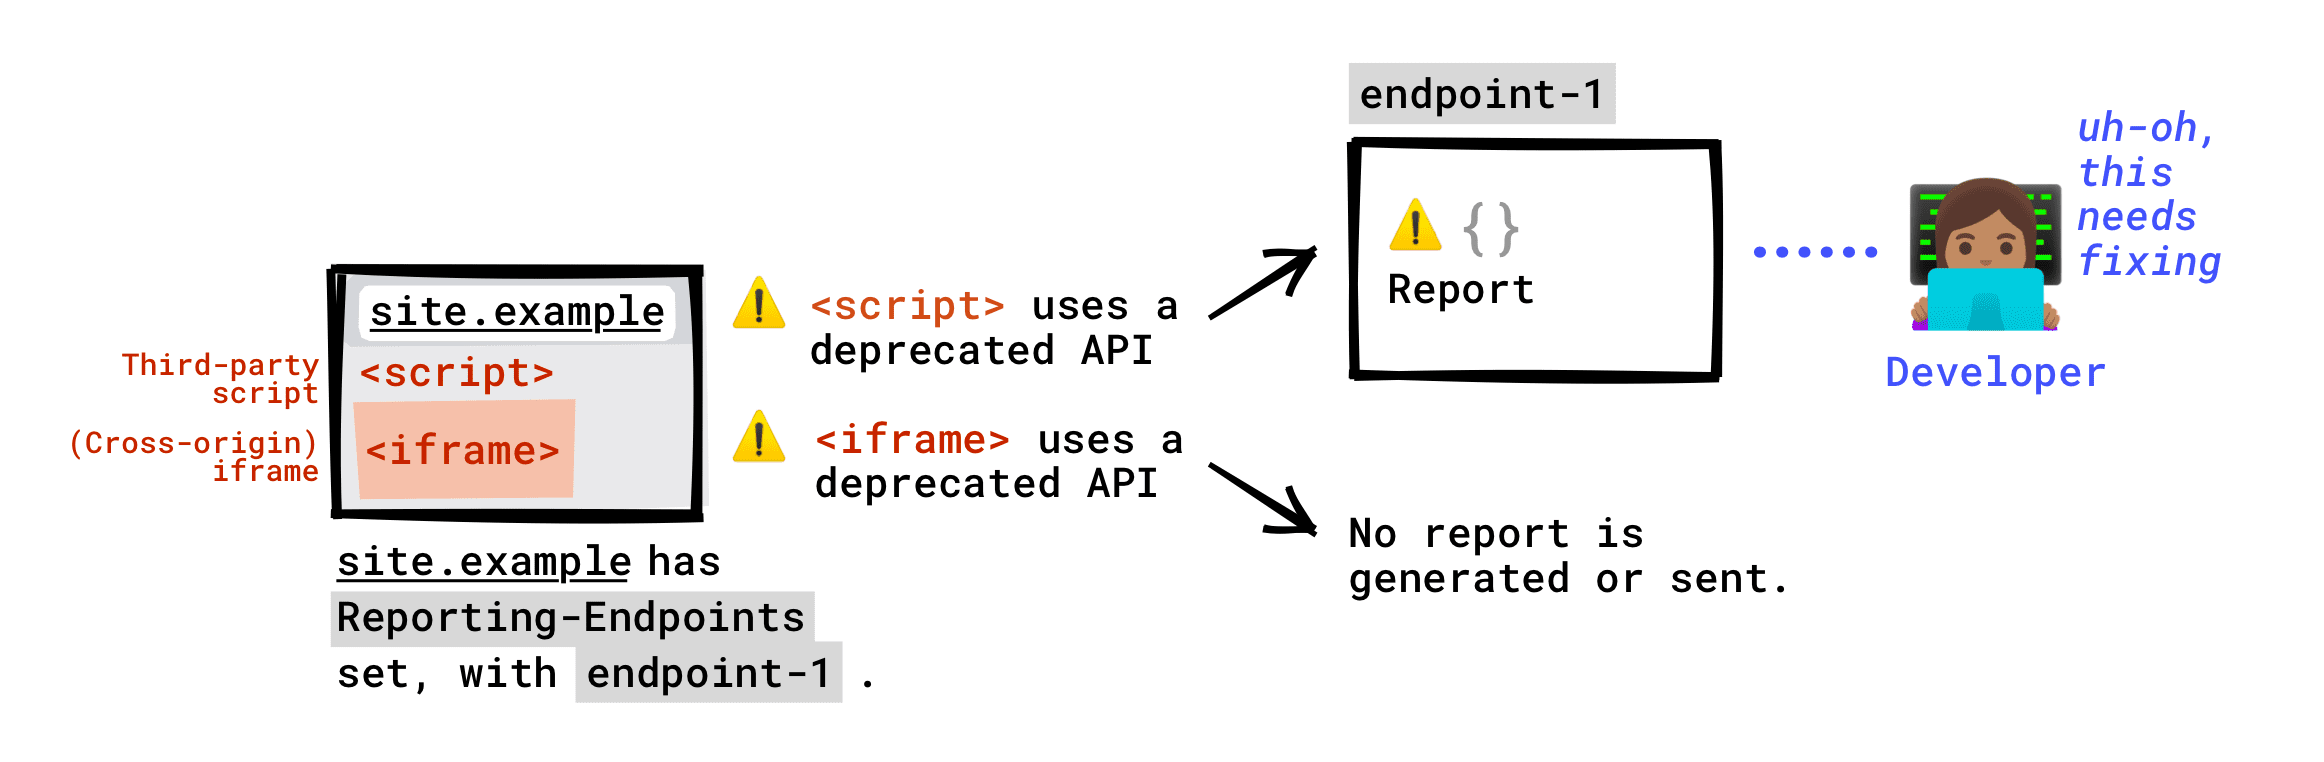 หากมีการตั้งค่าส่วนหัว Reporting-Endpoints ในหน้าเว็บ ระบบจะรายงาน API ที่เลิกใช้งานแล้วโดยสคริปต์ของบุคคลที่สามซึ่งทํางานอยู่บนหน้าเว็บของคุณไปยังปลายทางของคุณ API ที่เลิกใช้งานแล้วซึ่ง iframe ฝังอยู่ในหน้าเว็บเรียกใช้จะไม่ได้รับการรายงานไปยังปลายทางของคุณ ระบบจะสร้างรายงานการเลิกใช้งานก็ต่อเมื่อเซิร์ฟเวอร์ iframe ได้ตั้งค่าปลายทางการรายงานไว้ และรายงานนี้จะส่งไปยังปลายทางใดก็ตามที่เซิร์ฟเวอร์ของ iframe ตั้งค่าไว้